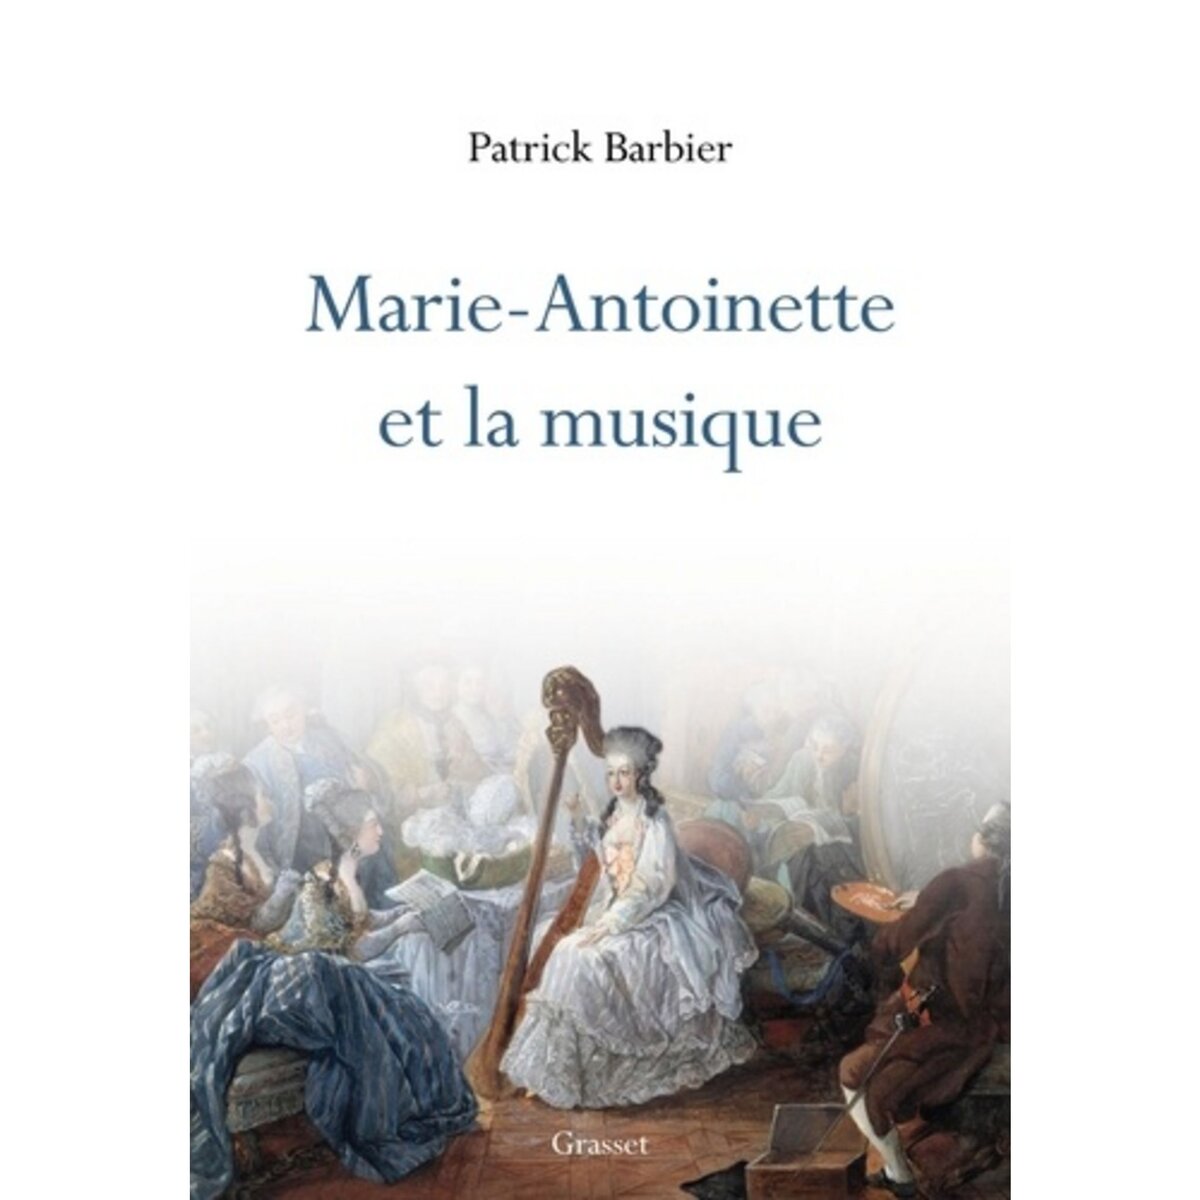  MARIE-ANTOINETTE ET LA MUSIQUE, Barbier Patrick